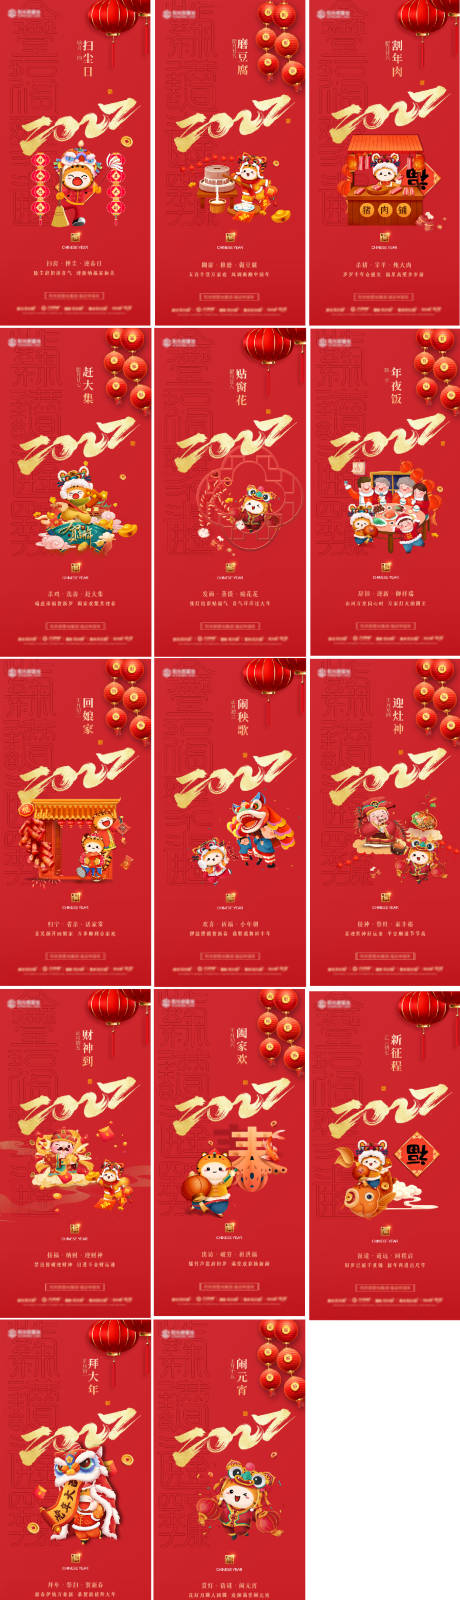 新年年俗传统节日系列